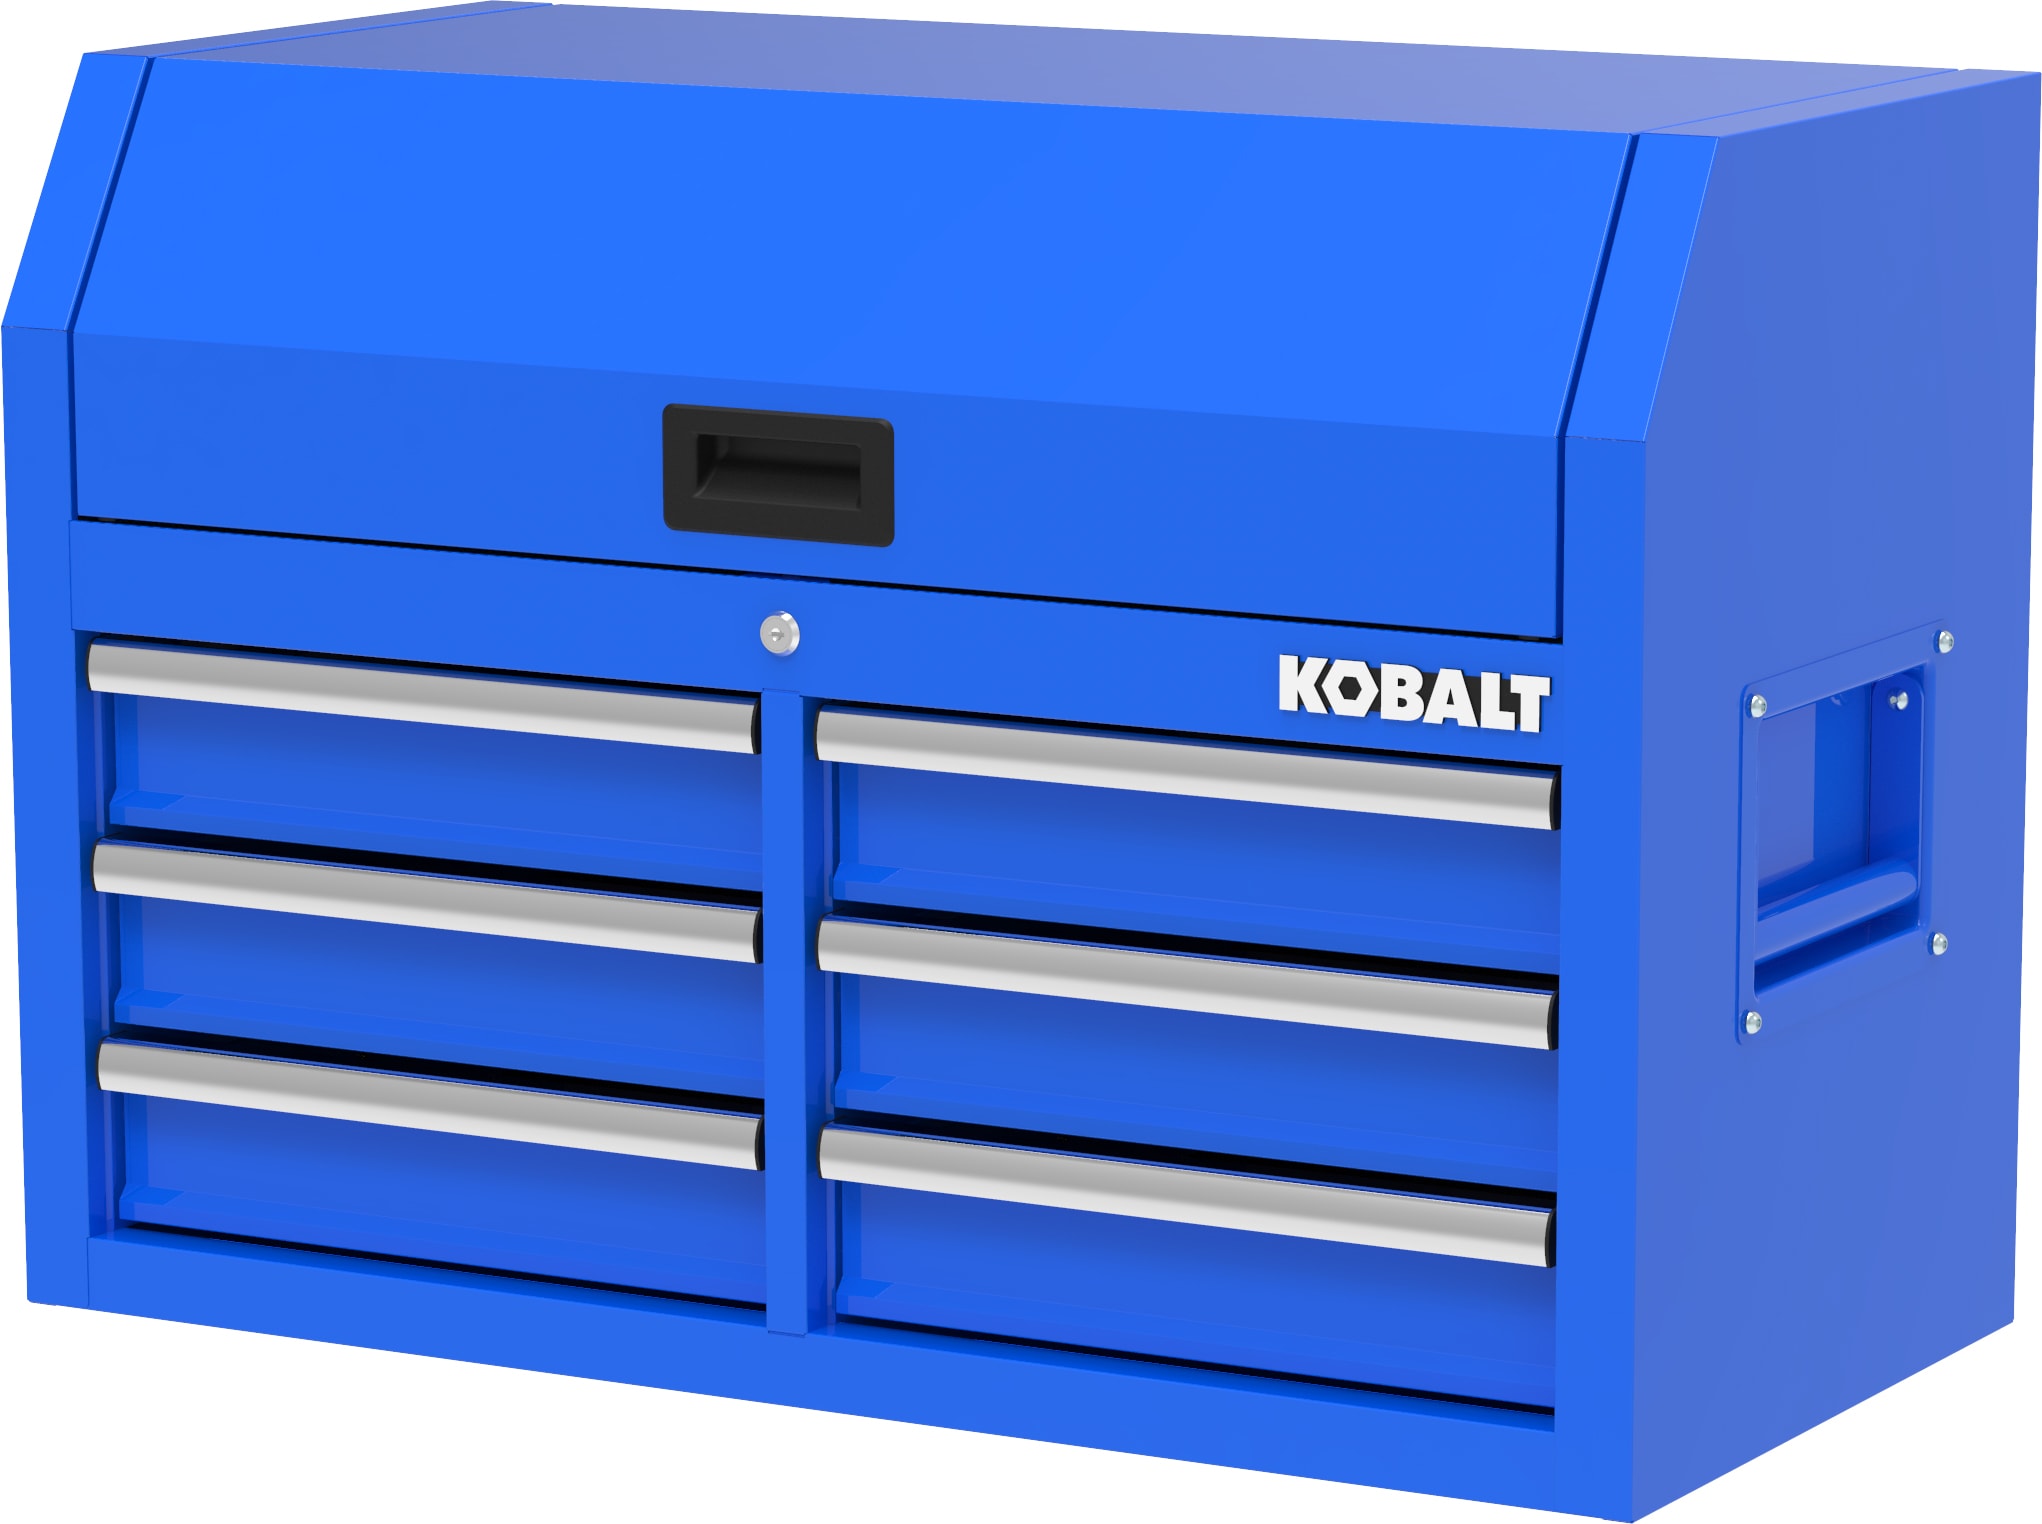 kobalt #minitoolbox #kobalttools #lowes #lowesfinds #loweshaul #kobal